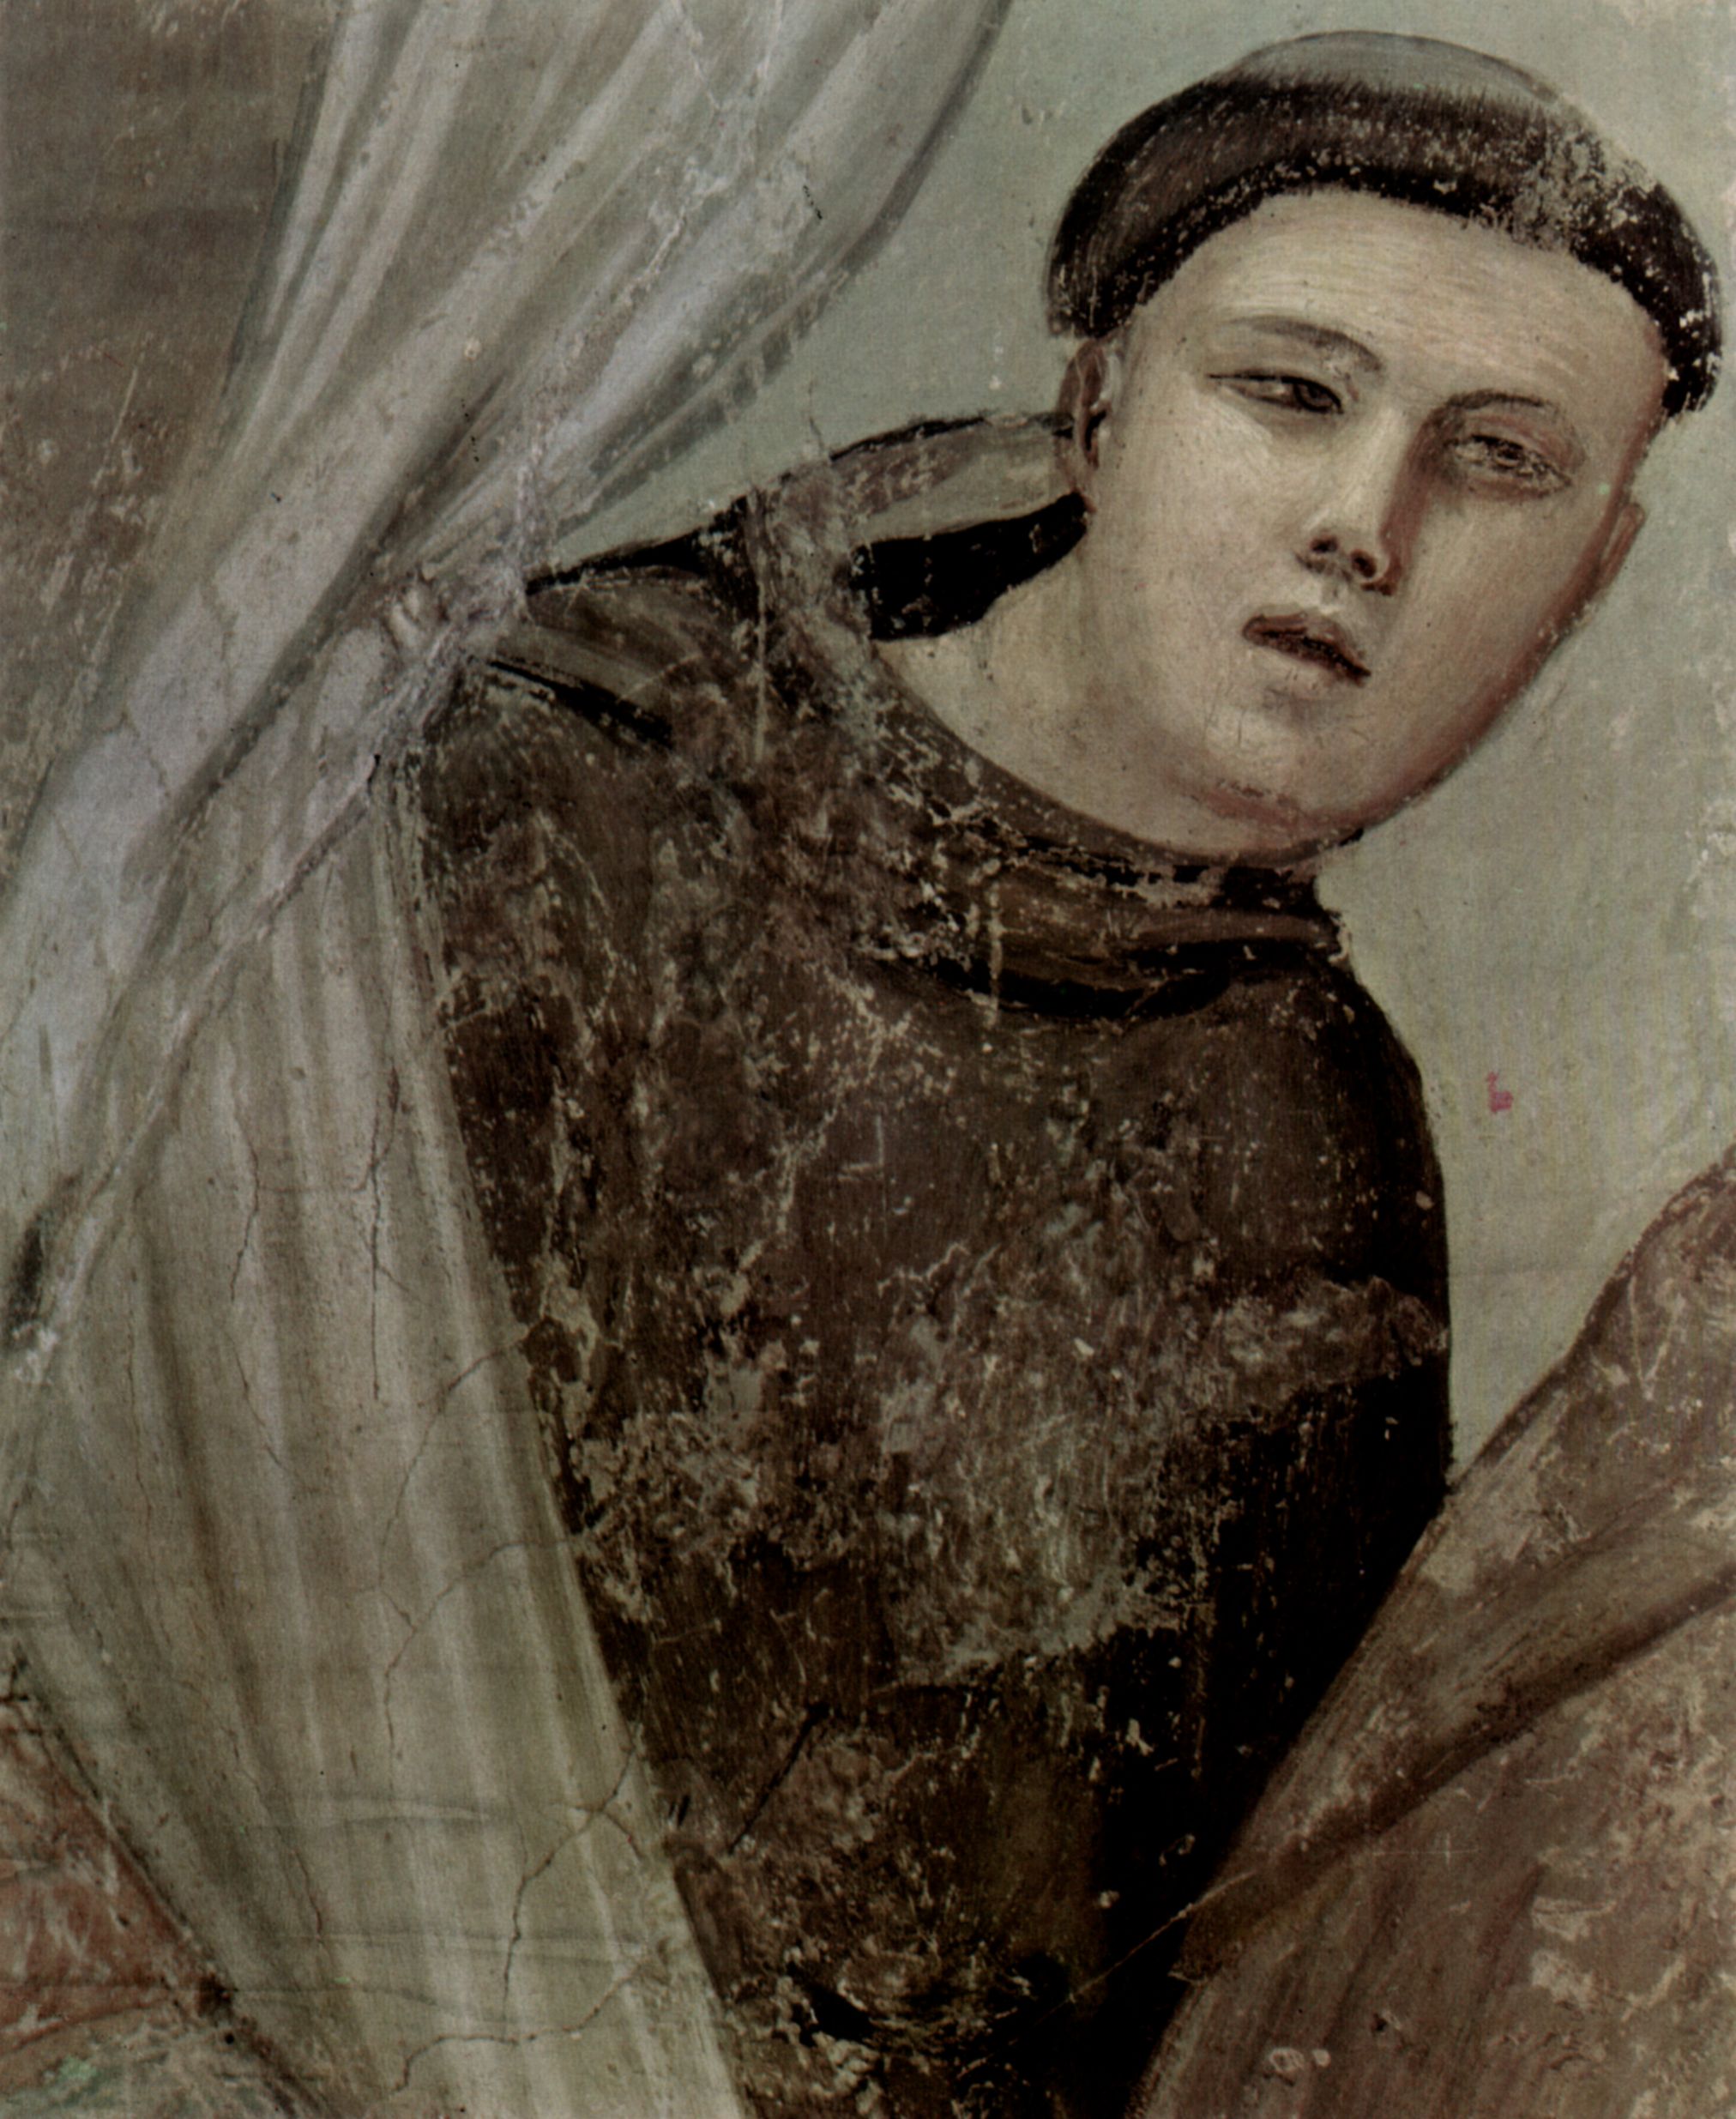 Giotto di Bondone: Freskenzyklus mit Szenen aus dem Leben des Hl. Franziskus, Bardi-Kapelle, Santa Croce in Florenz, Szene: Die Erscheinung des Fra Augustinus vor dem Bischof